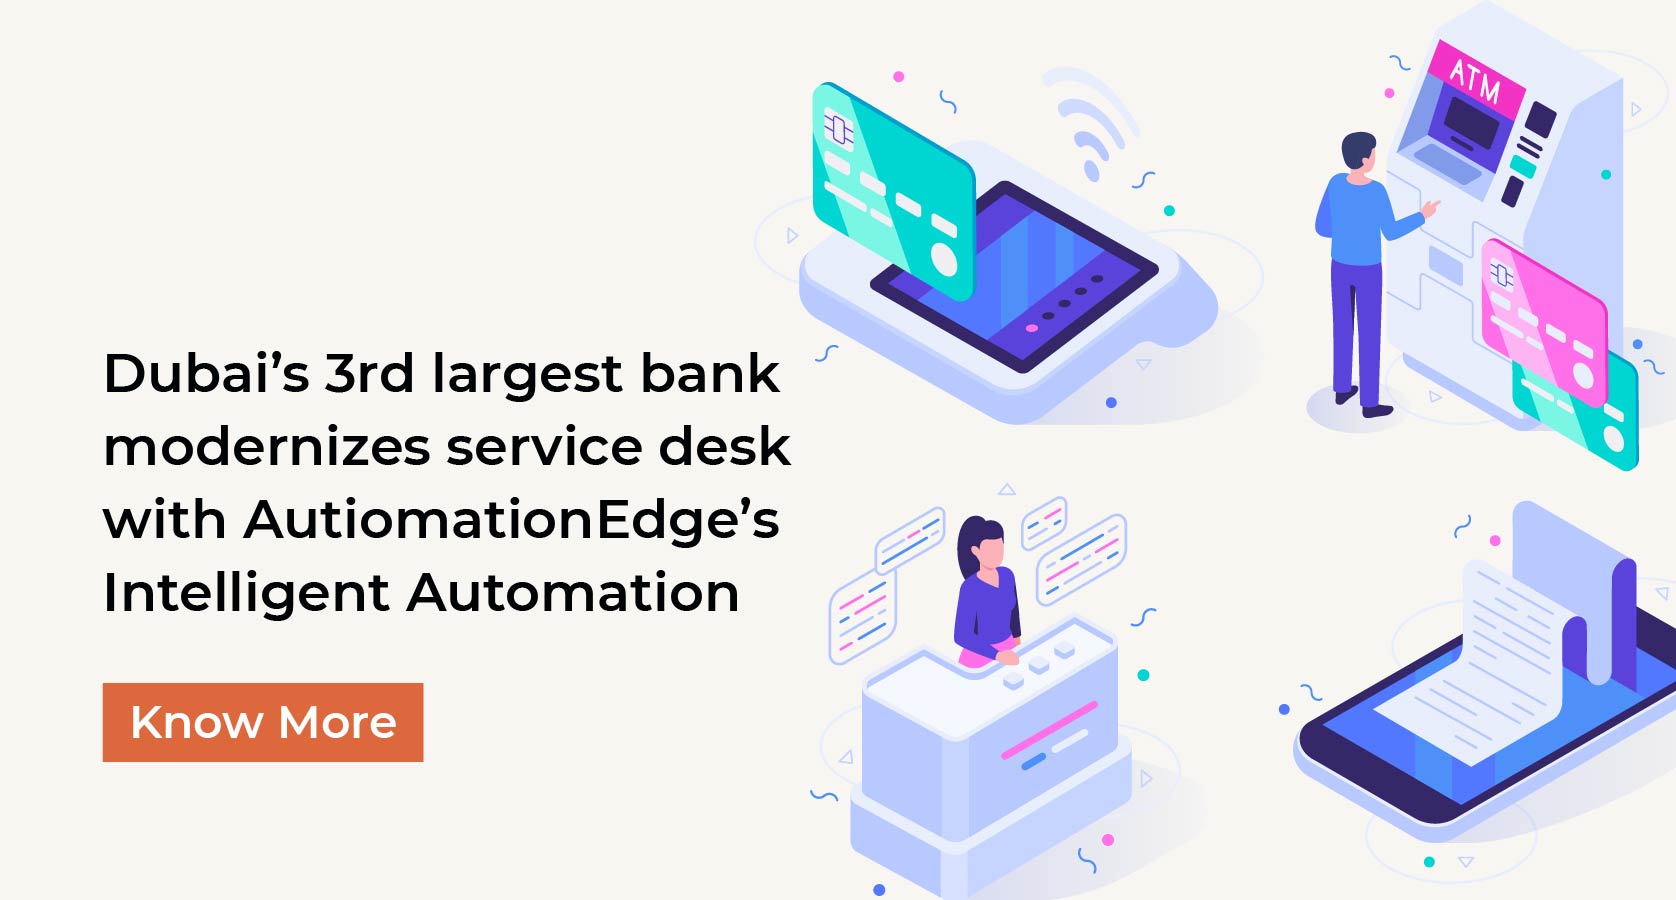 Dubai’s 3rd largest bank modernizes service desk with AutiomationEdge's Intelligent Automation